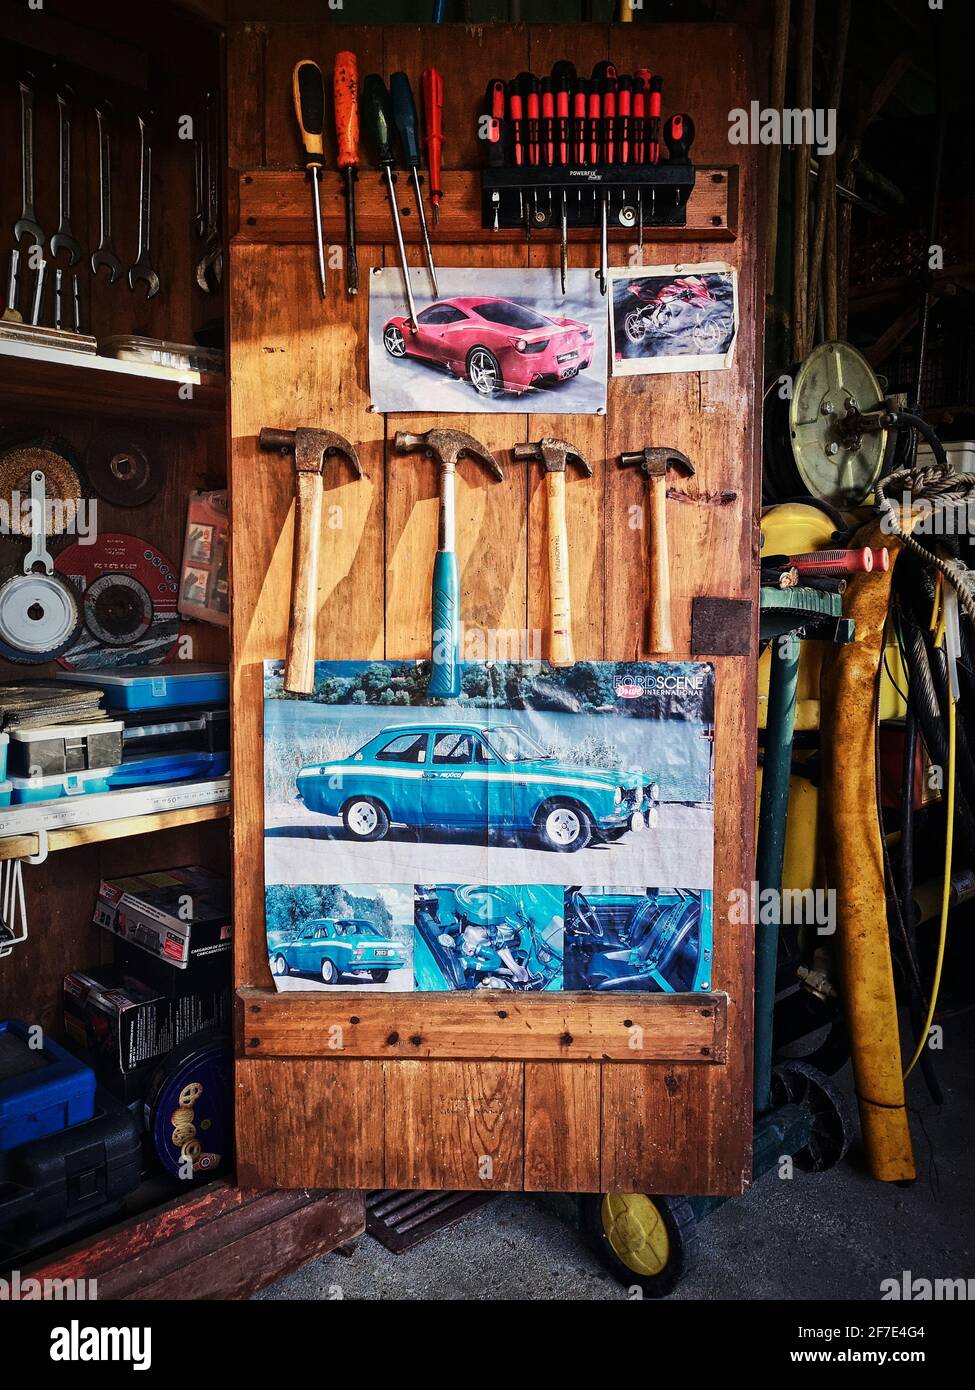 Outil de travail à l'intérieur du placard avec affiche de voiture.Ouvrir le placard en bois avec les outils de travail Banque D'Images